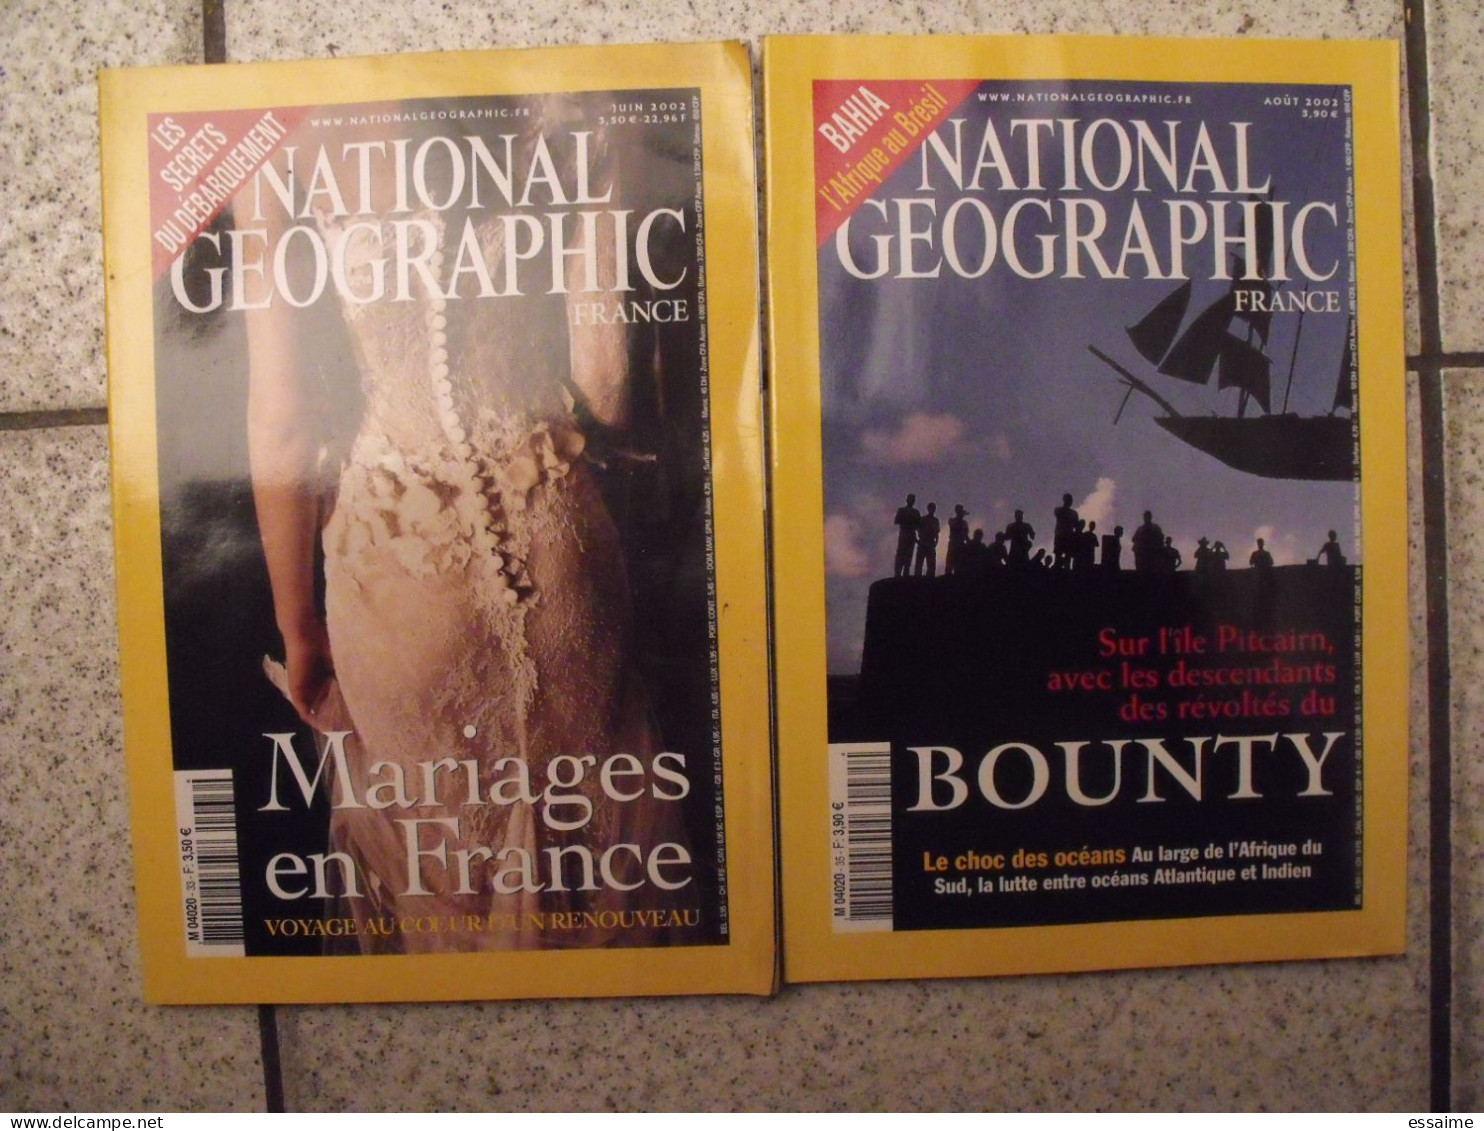 lot de 12 n° de la revue National Geographic en français 2000-2002.